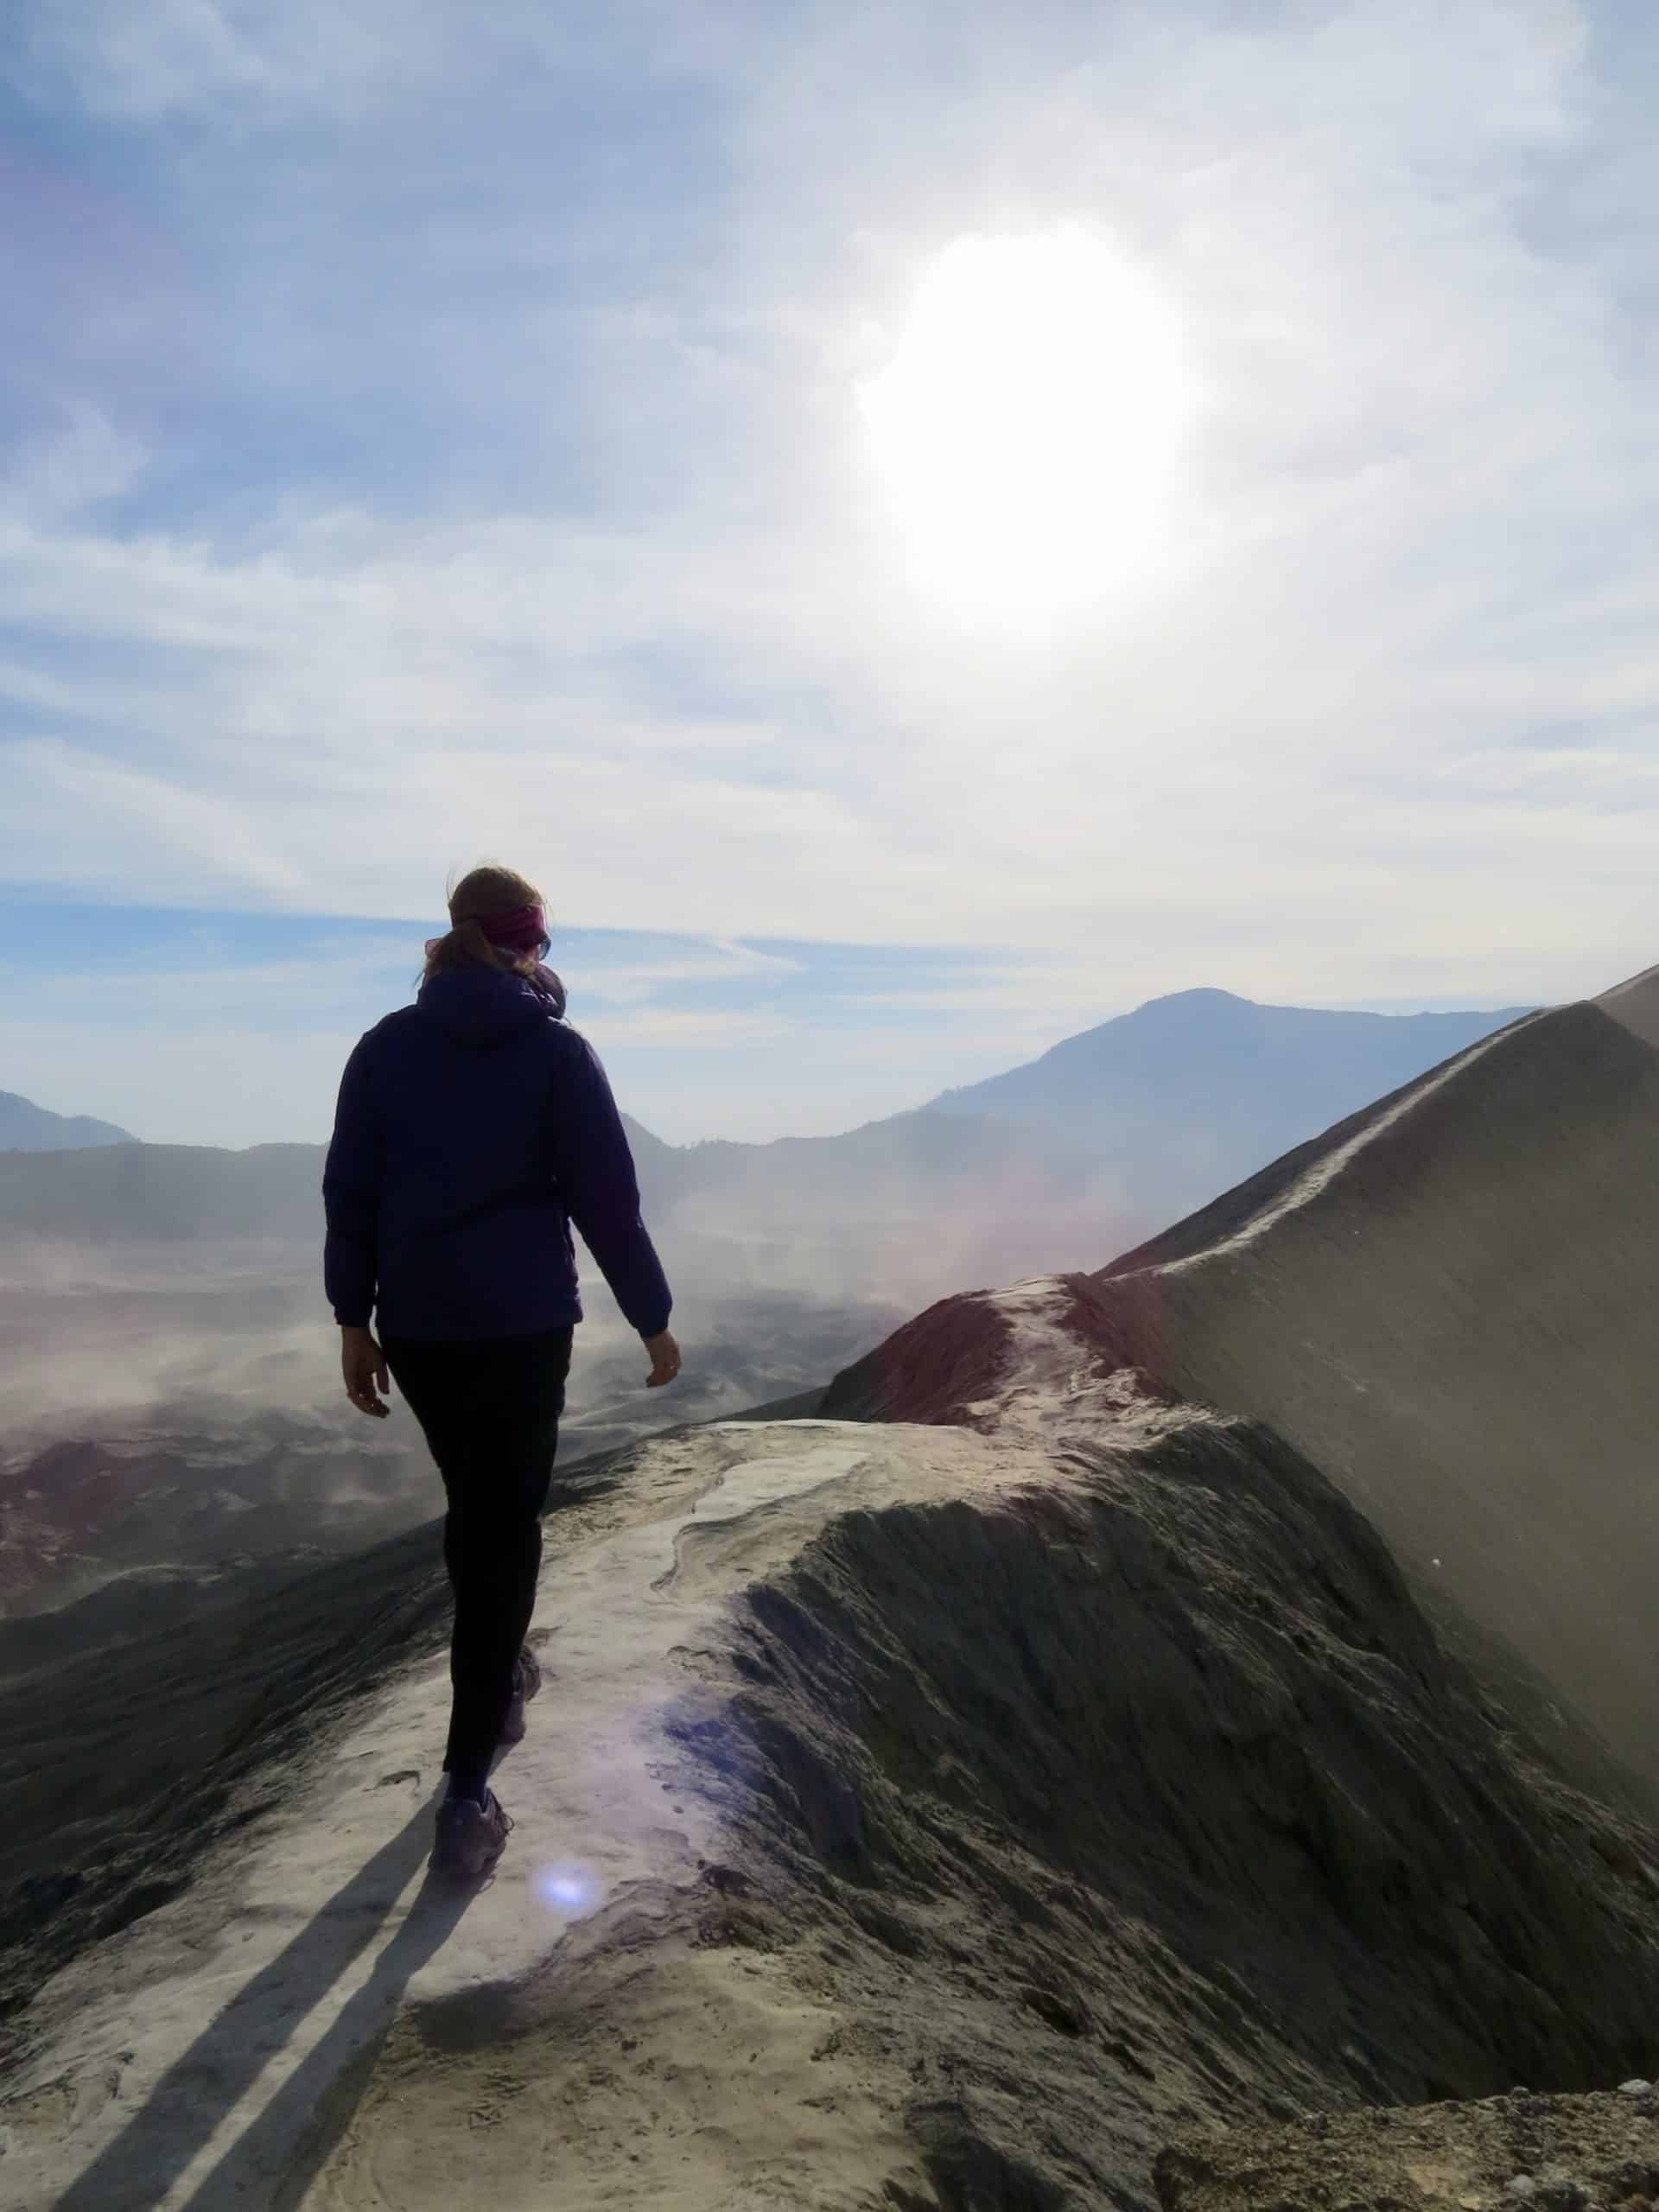 Joannda walking on Mount Bromo Crater rim